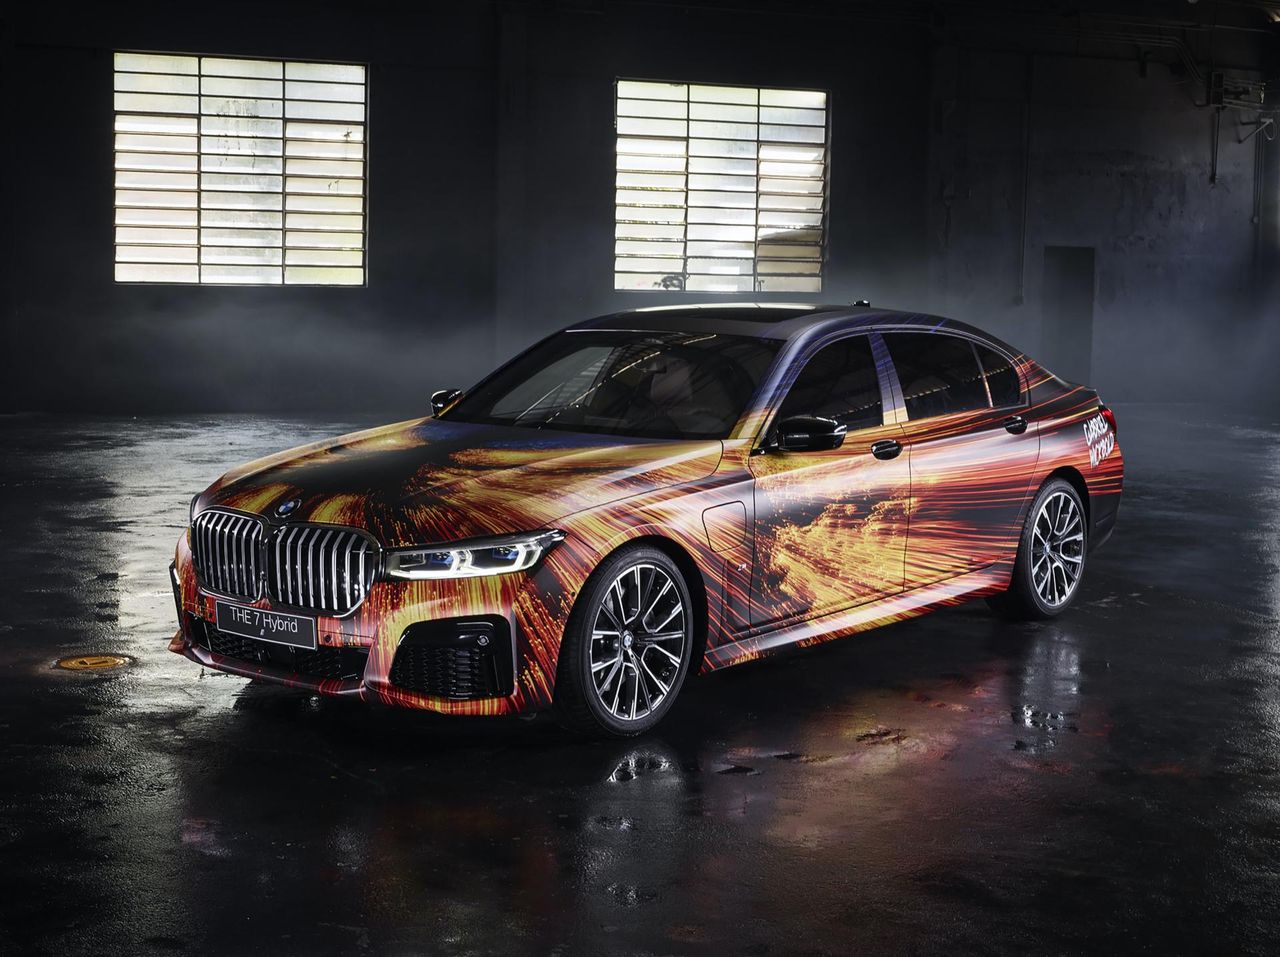 To kolejny z kilkudziesięciu projektów w ramach programu BMW ArtCar.